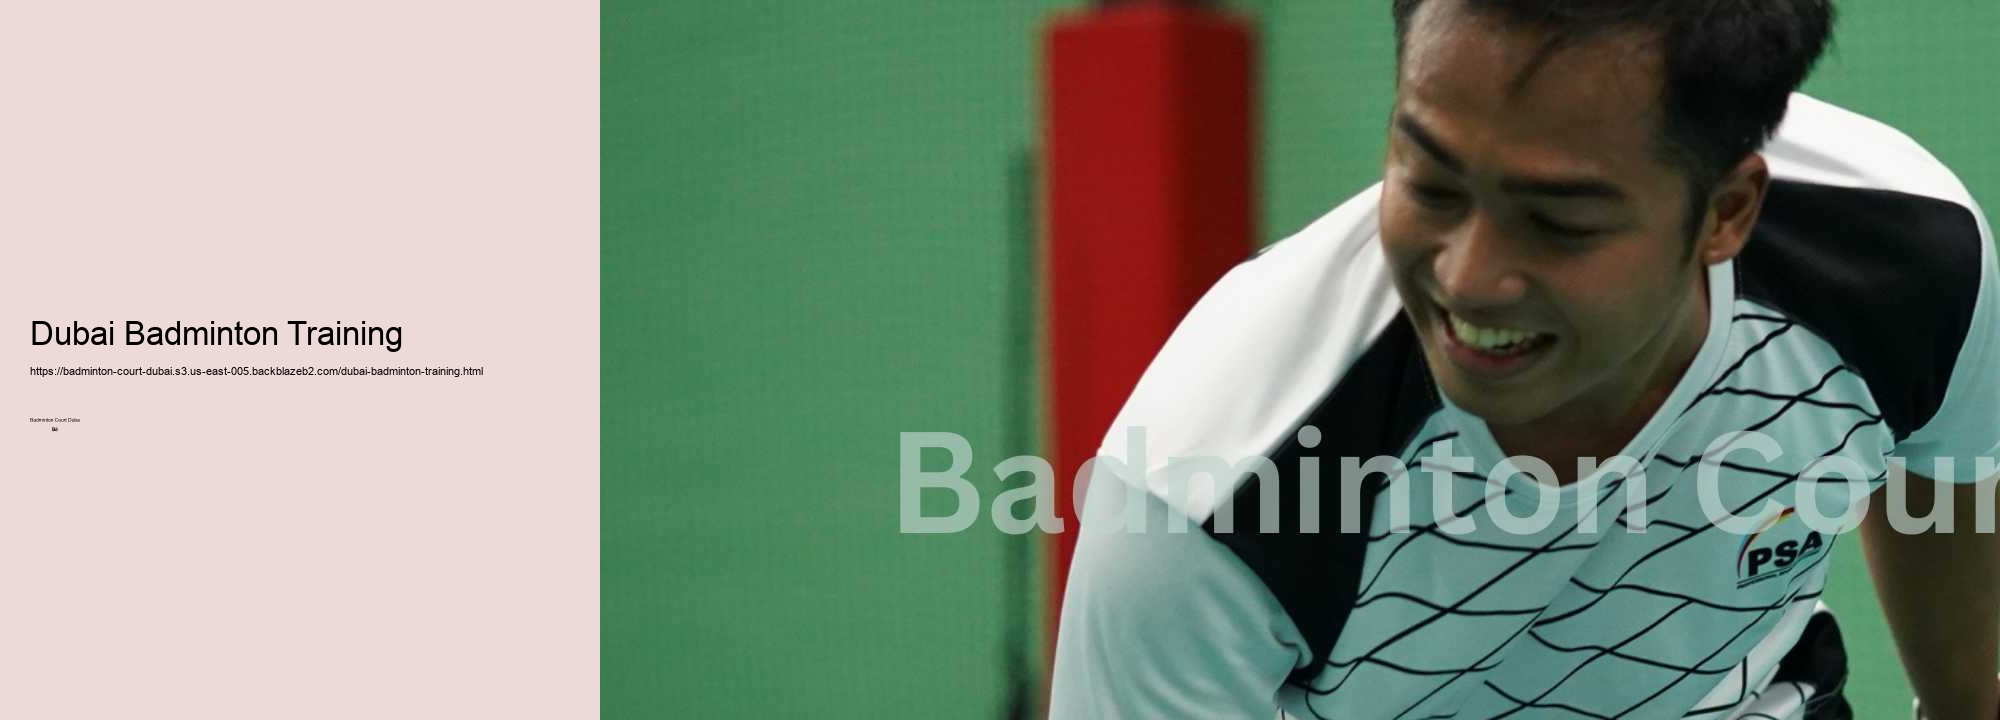 Dubai Badminton Training